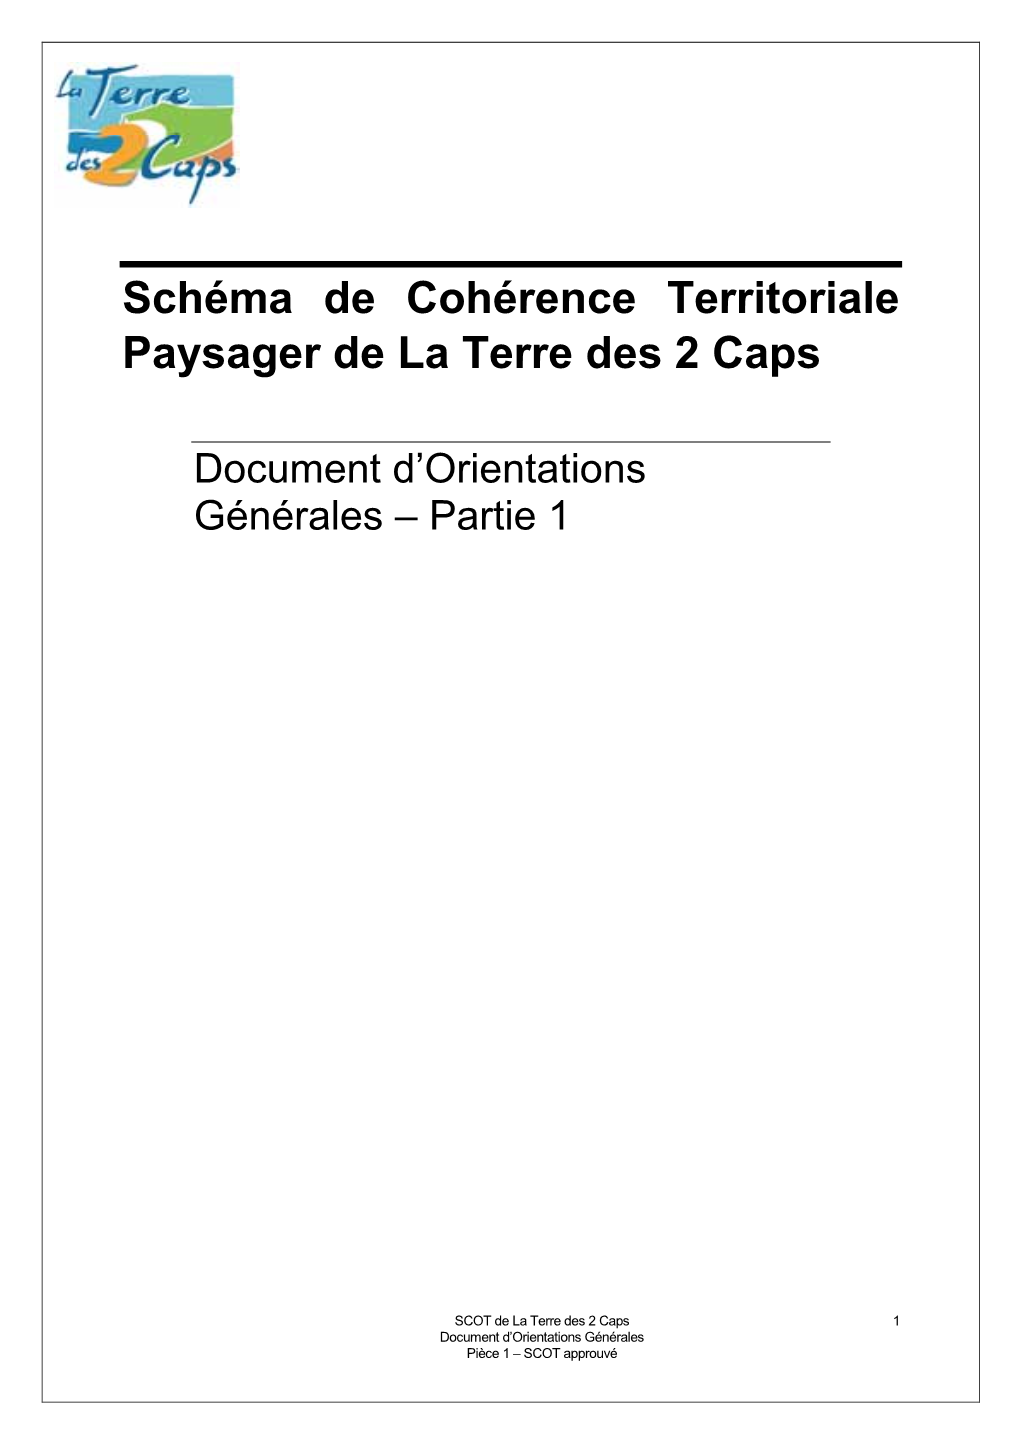 Document D'orientations Générales – Partie 1